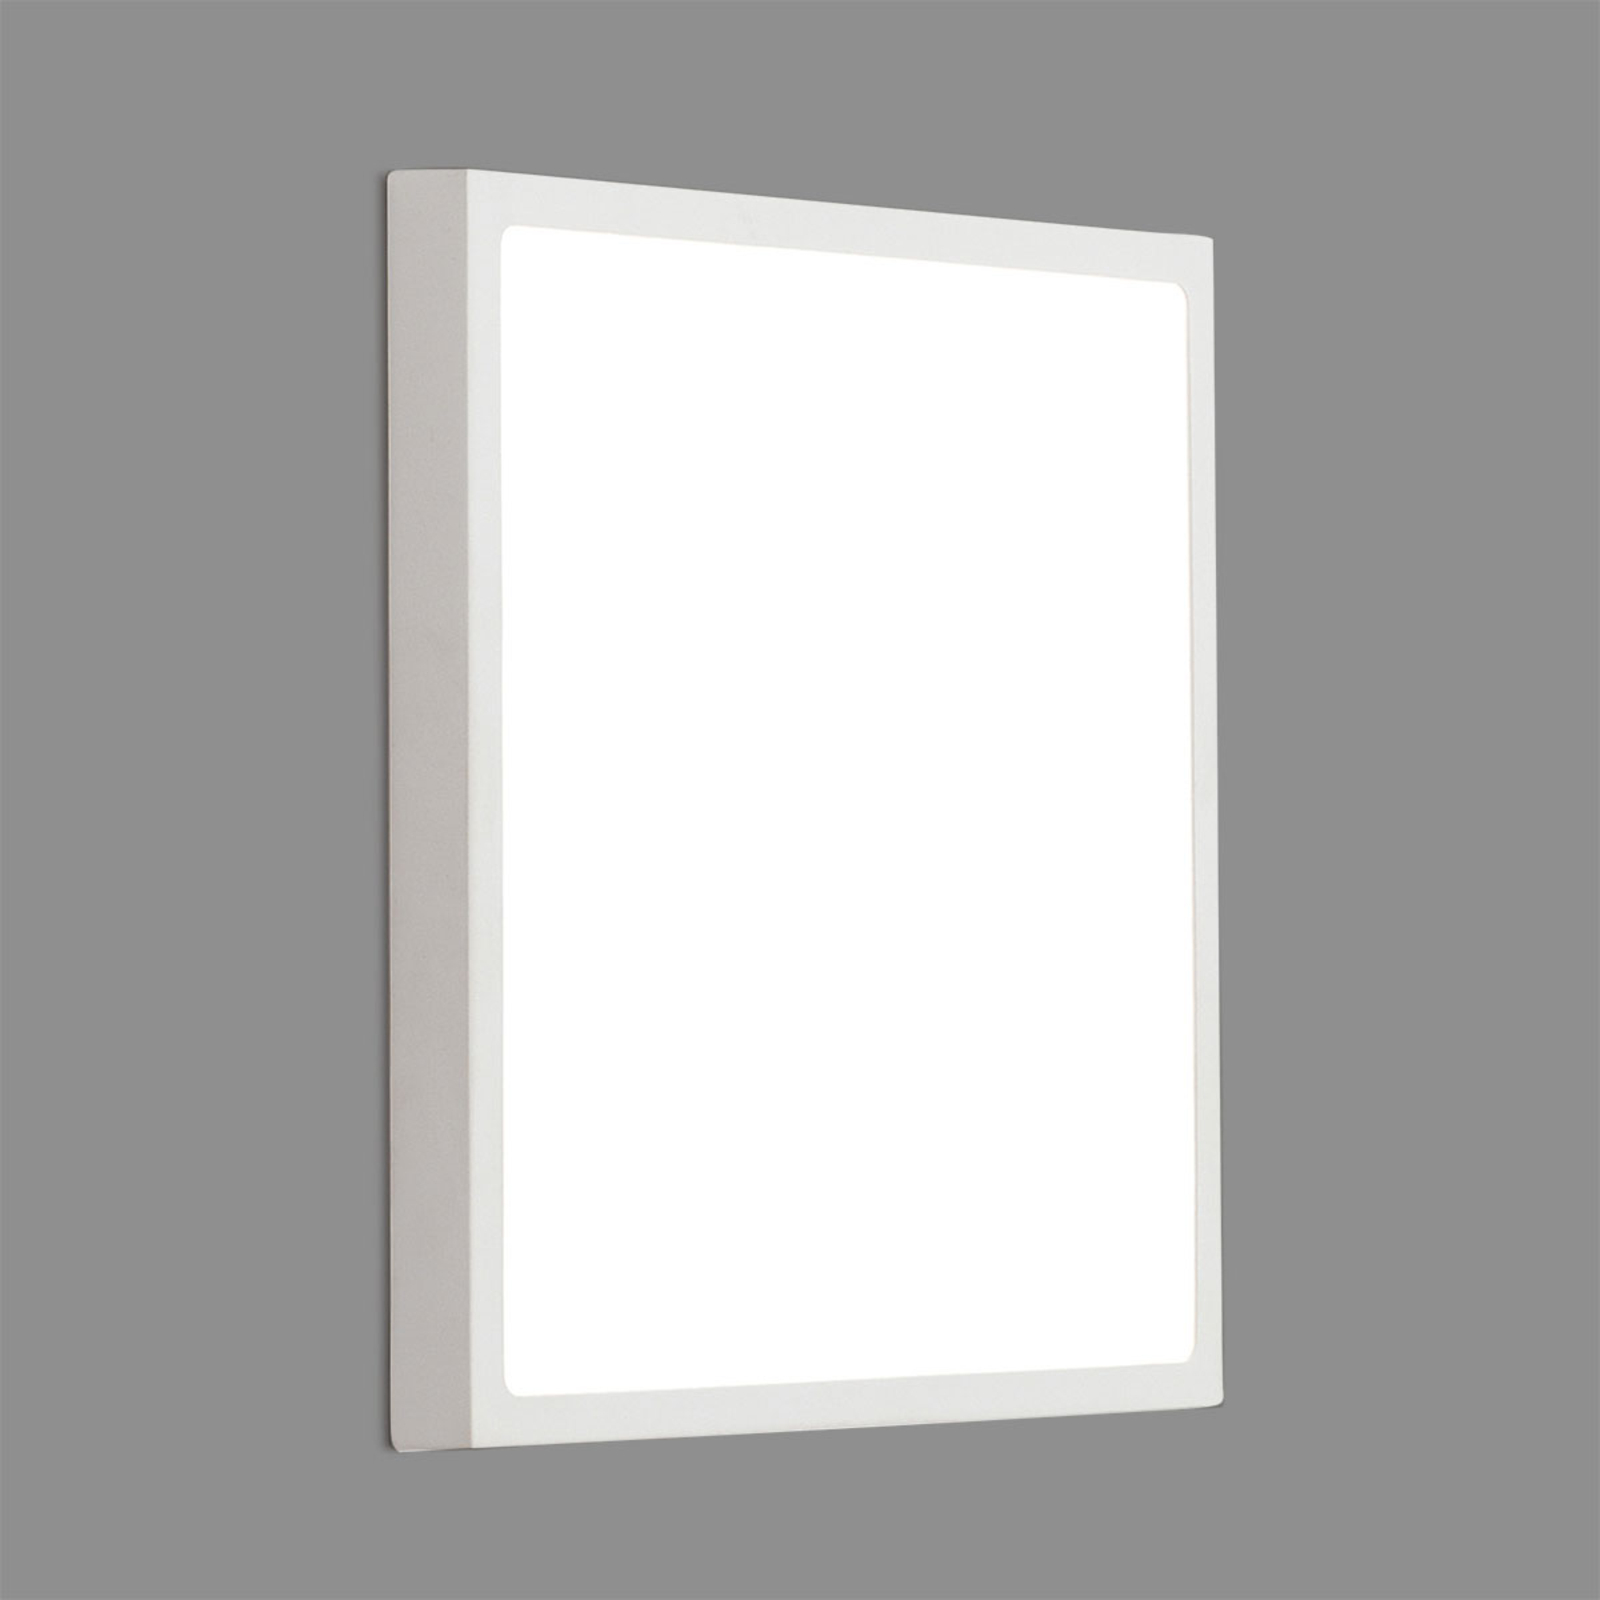 Applique LED Vika, carrée, blanche, 30 x 30 cm